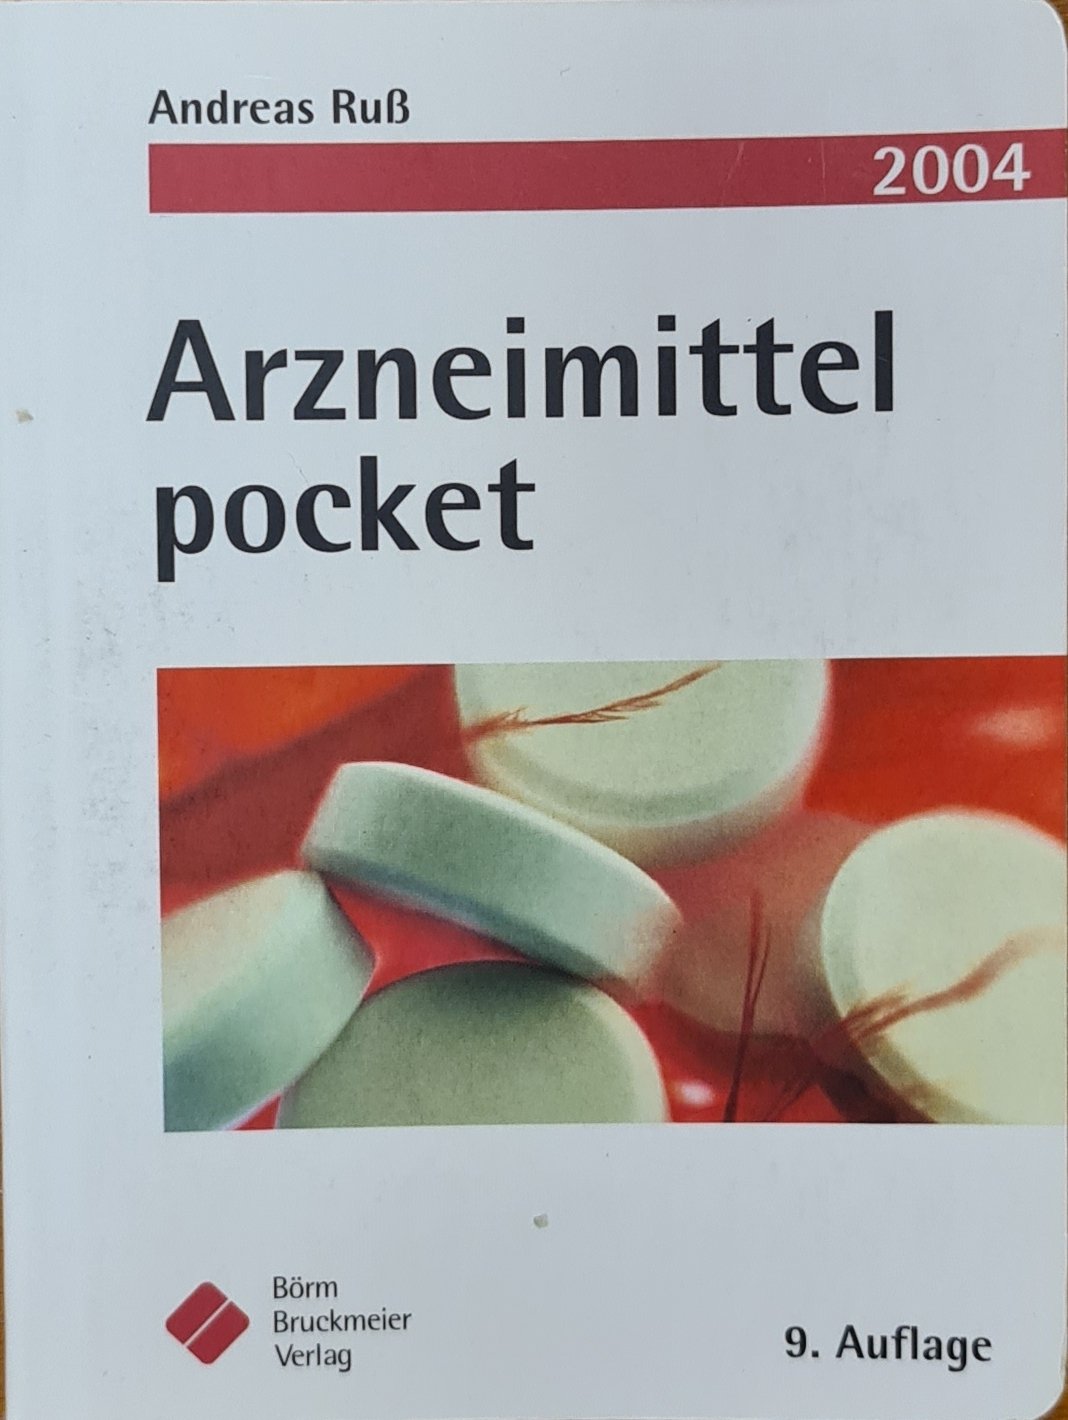 Arzneimittel pocket (Krankenhausmuseum Bielefeld e.V. CC BY-NC-SA)